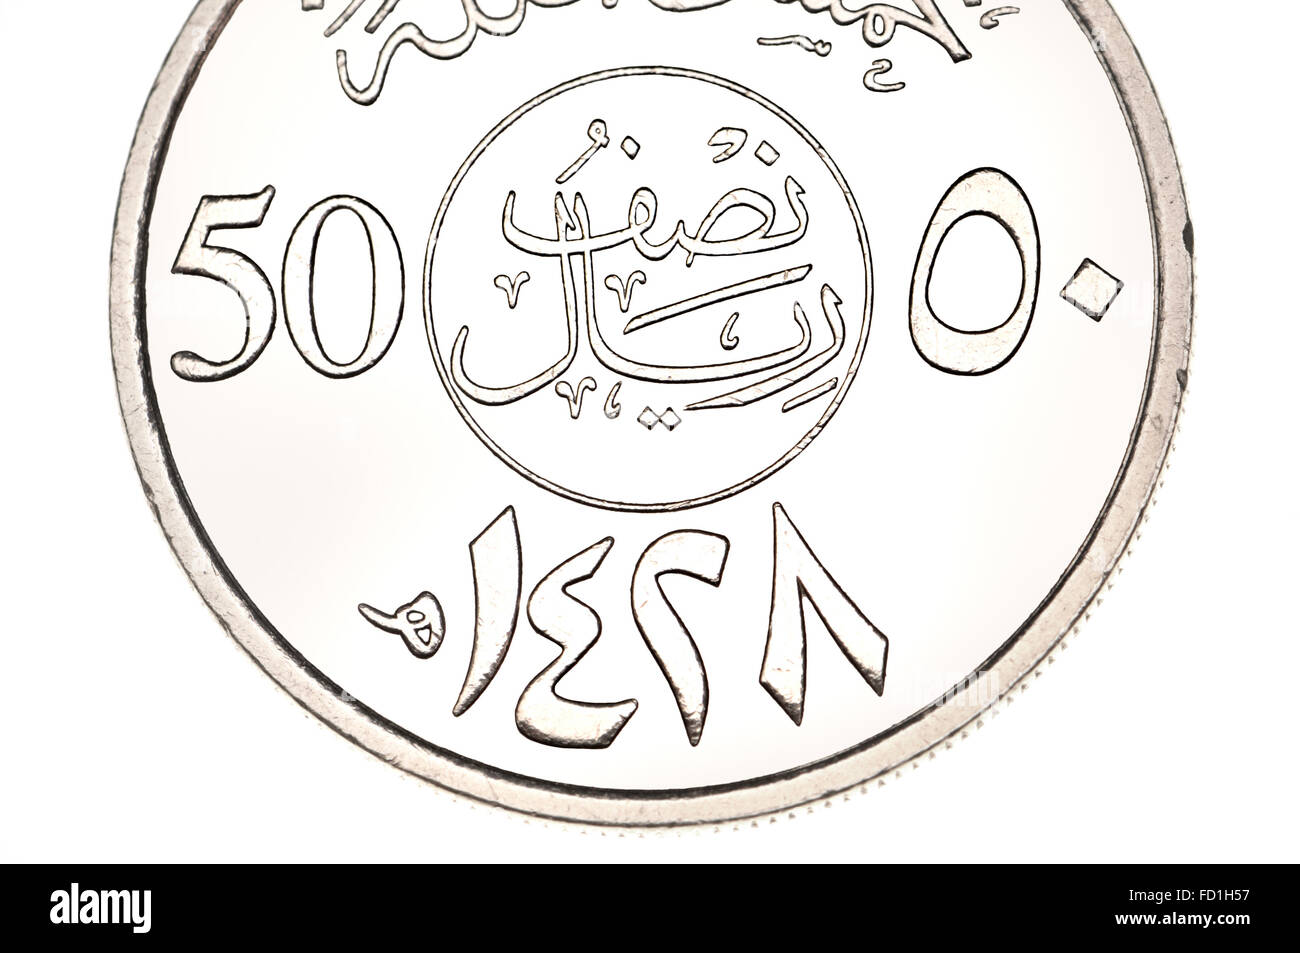 50 Halala moneta di Arabia Saudita che mostra la scrittura araba e simboli (cupro-nickel) e data 1428 (2007) del calendario islamico. Foto Stock